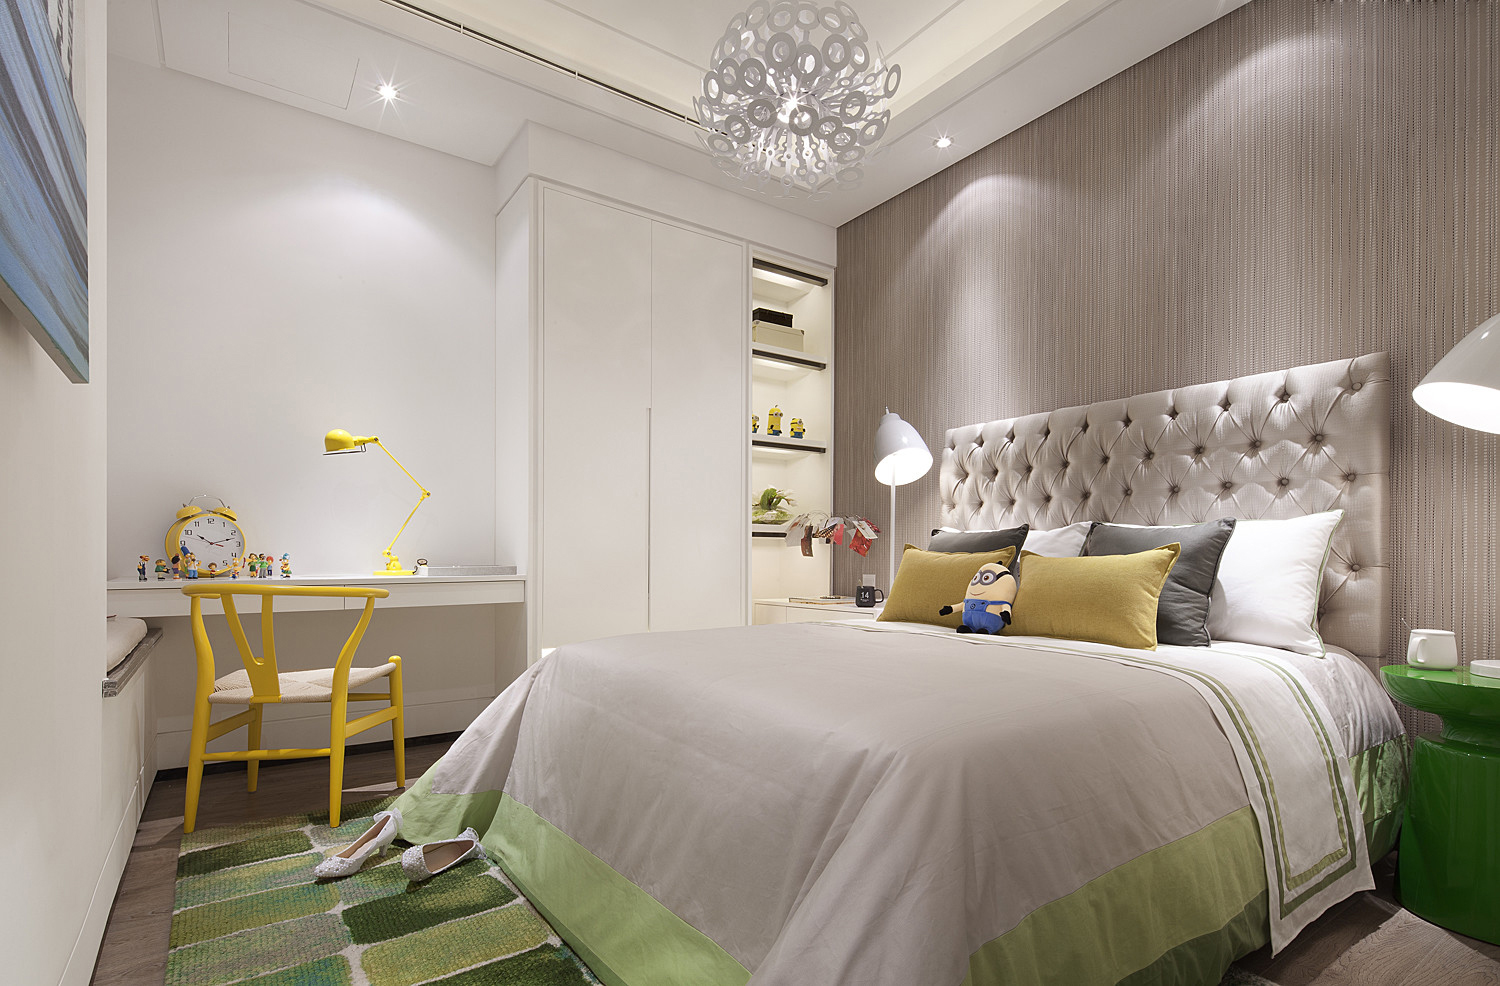 卧室应该是一个安静的、温馨的场所，从选材、色彩、室内灯光布局到室内物件的摆设都要经过精心设计。